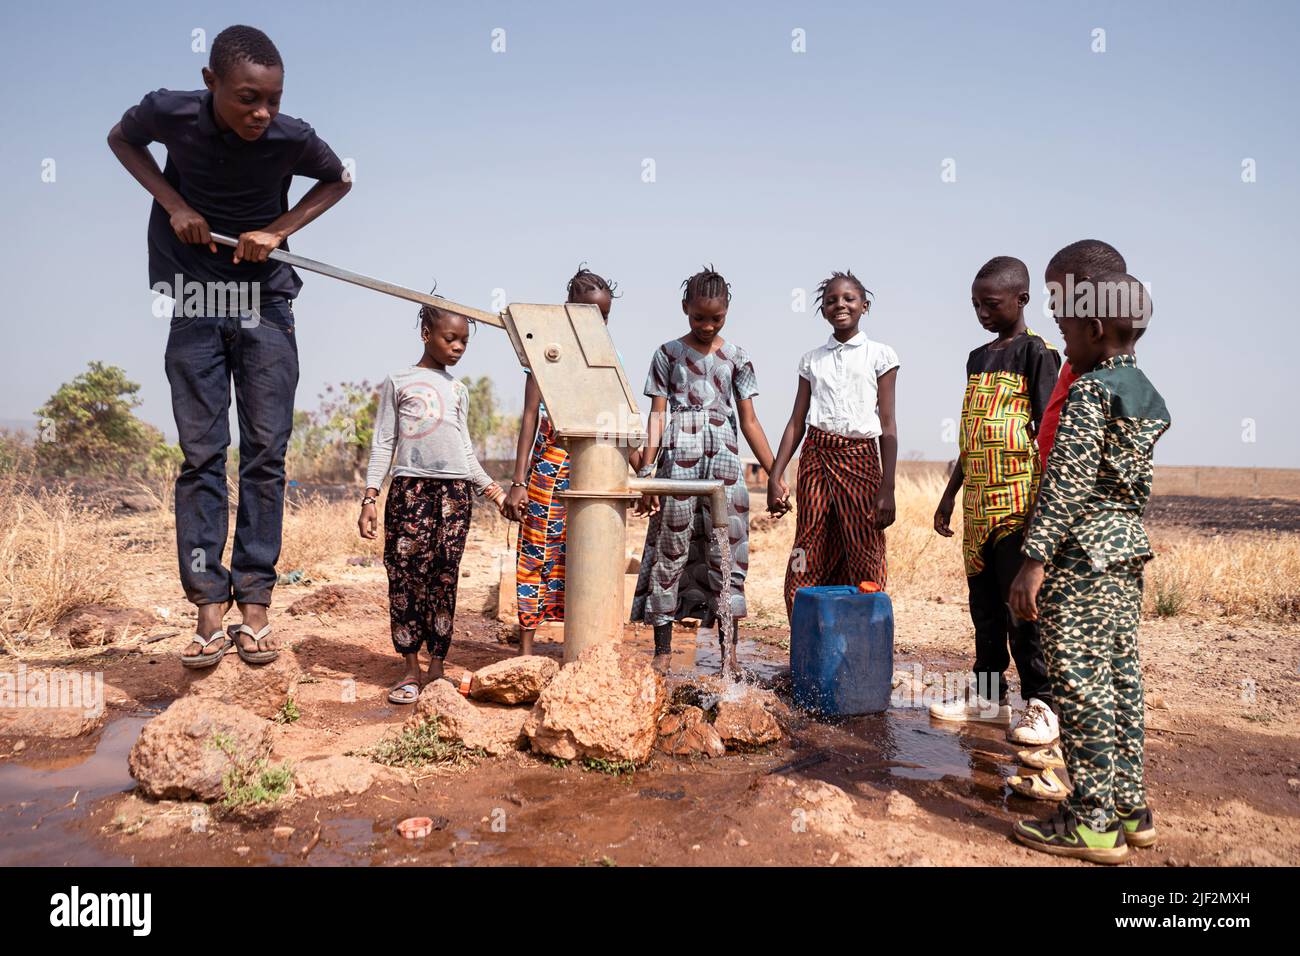 Plusieurs jeunes enfants de village africains se sont regroupés autour d'une pompe manuelle remplissant les réservoirs d'eau potable propre et fraîche Banque D'Images